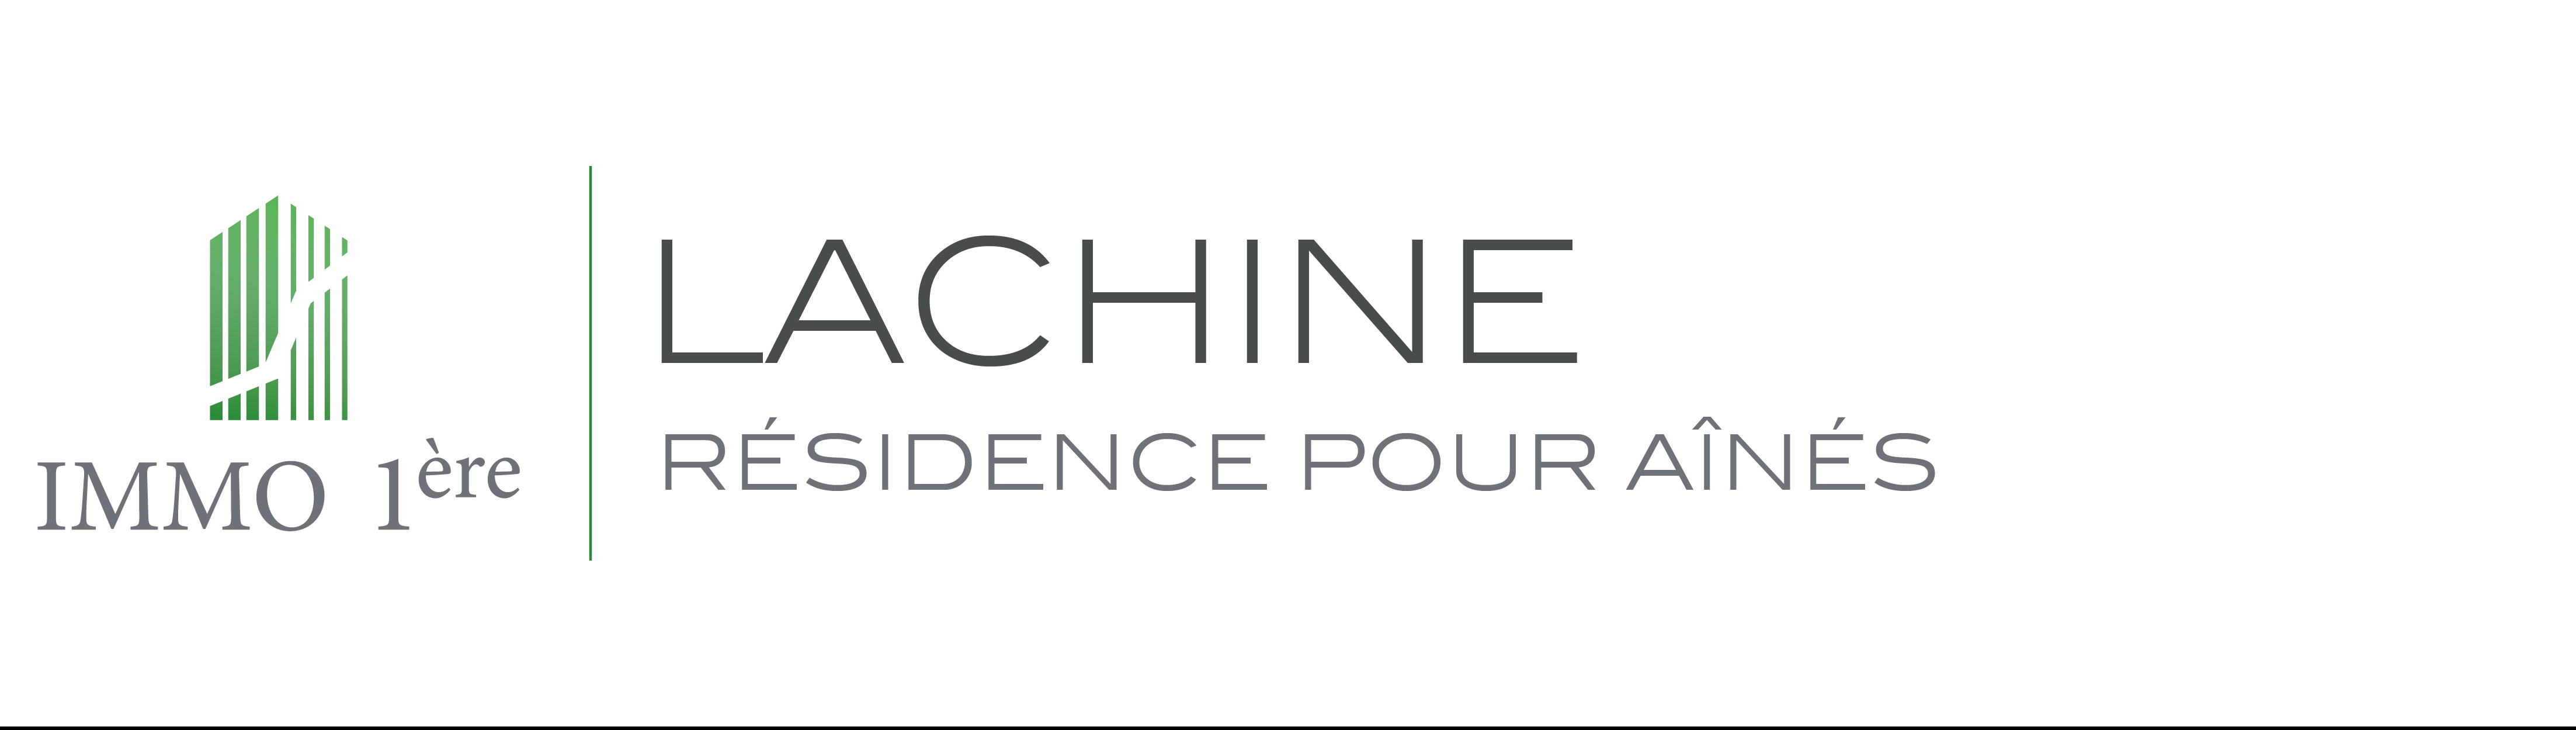 Résidence Lachine